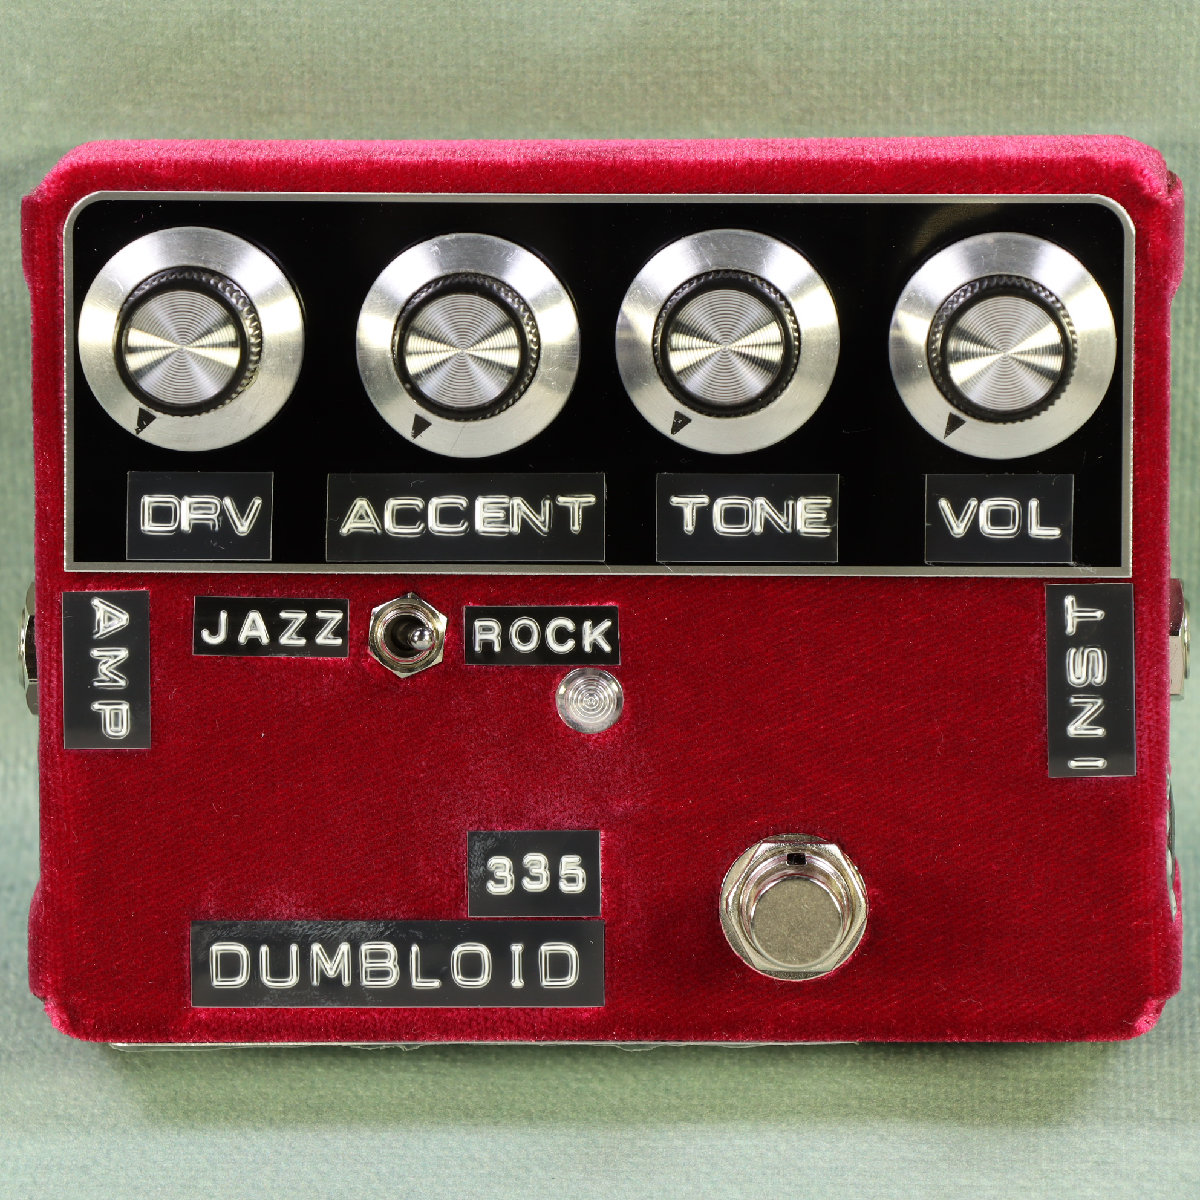 Shins Music / Dumbloid 335 Special Cherry Velvet Black Panel with JAZZ/ROCK SW シンズミュージック オーバードライブ